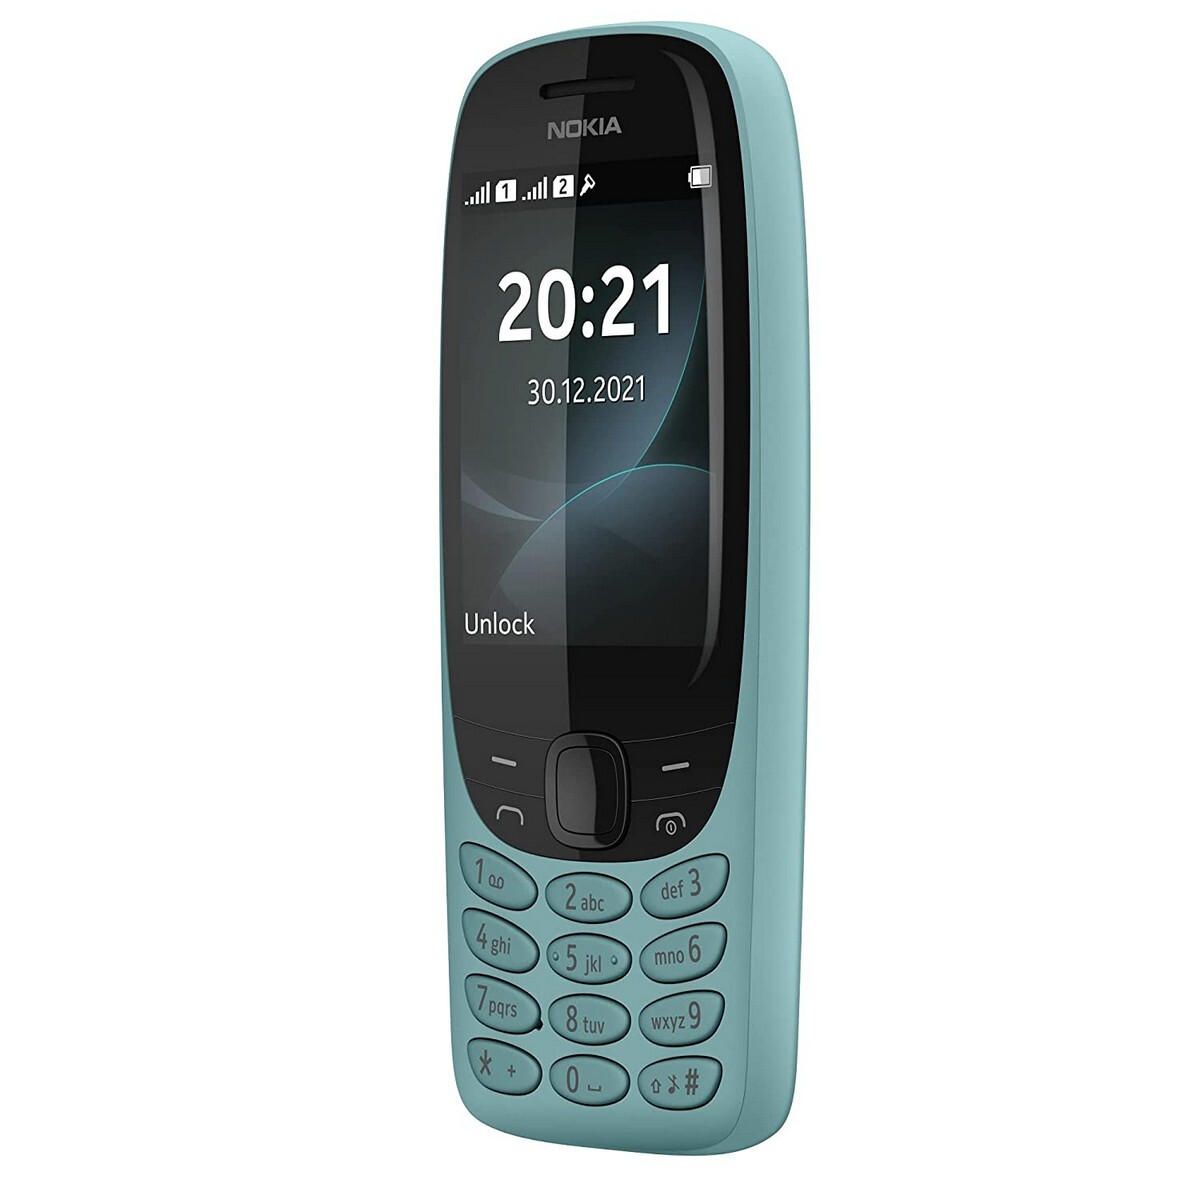 Nokia Mobile Phone 6310 Dual Sim Blue